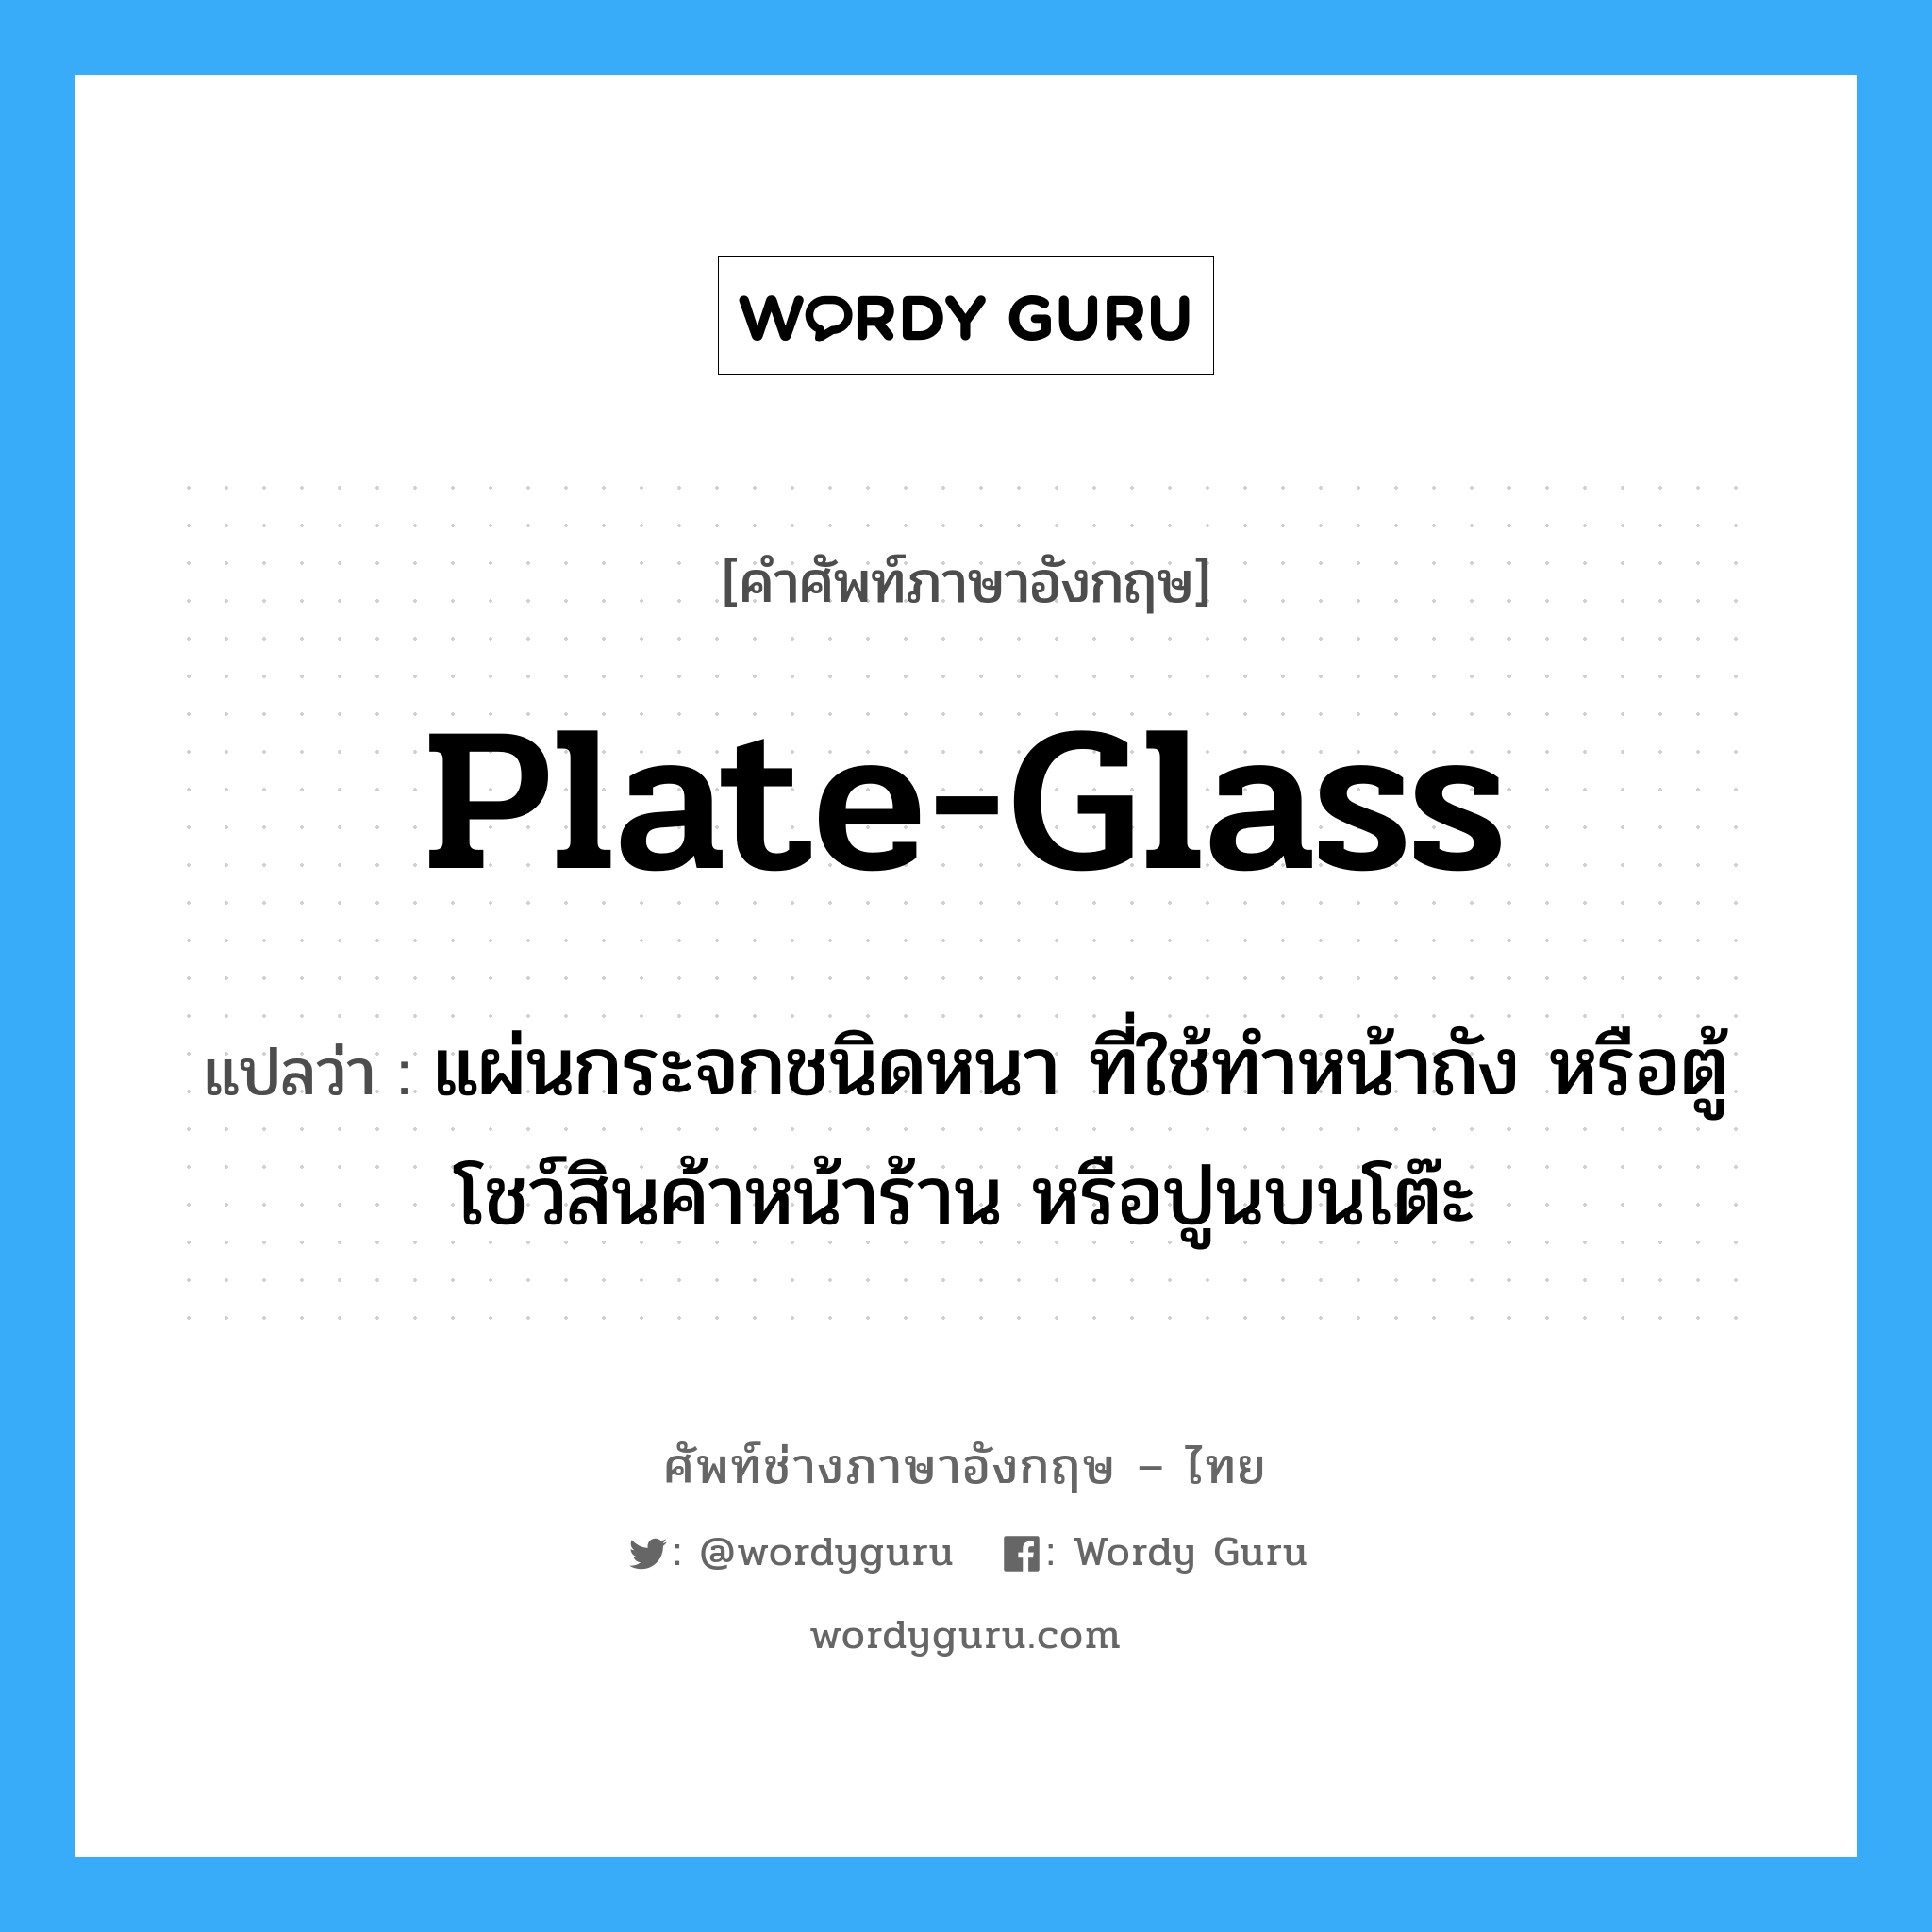 plate-glass แปลว่า?, คำศัพท์ช่างภาษาอังกฤษ - ไทย plate-glass คำศัพท์ภาษาอังกฤษ plate-glass แปลว่า แผ่นกระจกชนิดหนา ที่ใช้ทำหน้าถัง หรือตู้โชว์สินค้าหน้าร้าน หรือปูนบนโต๊ะ